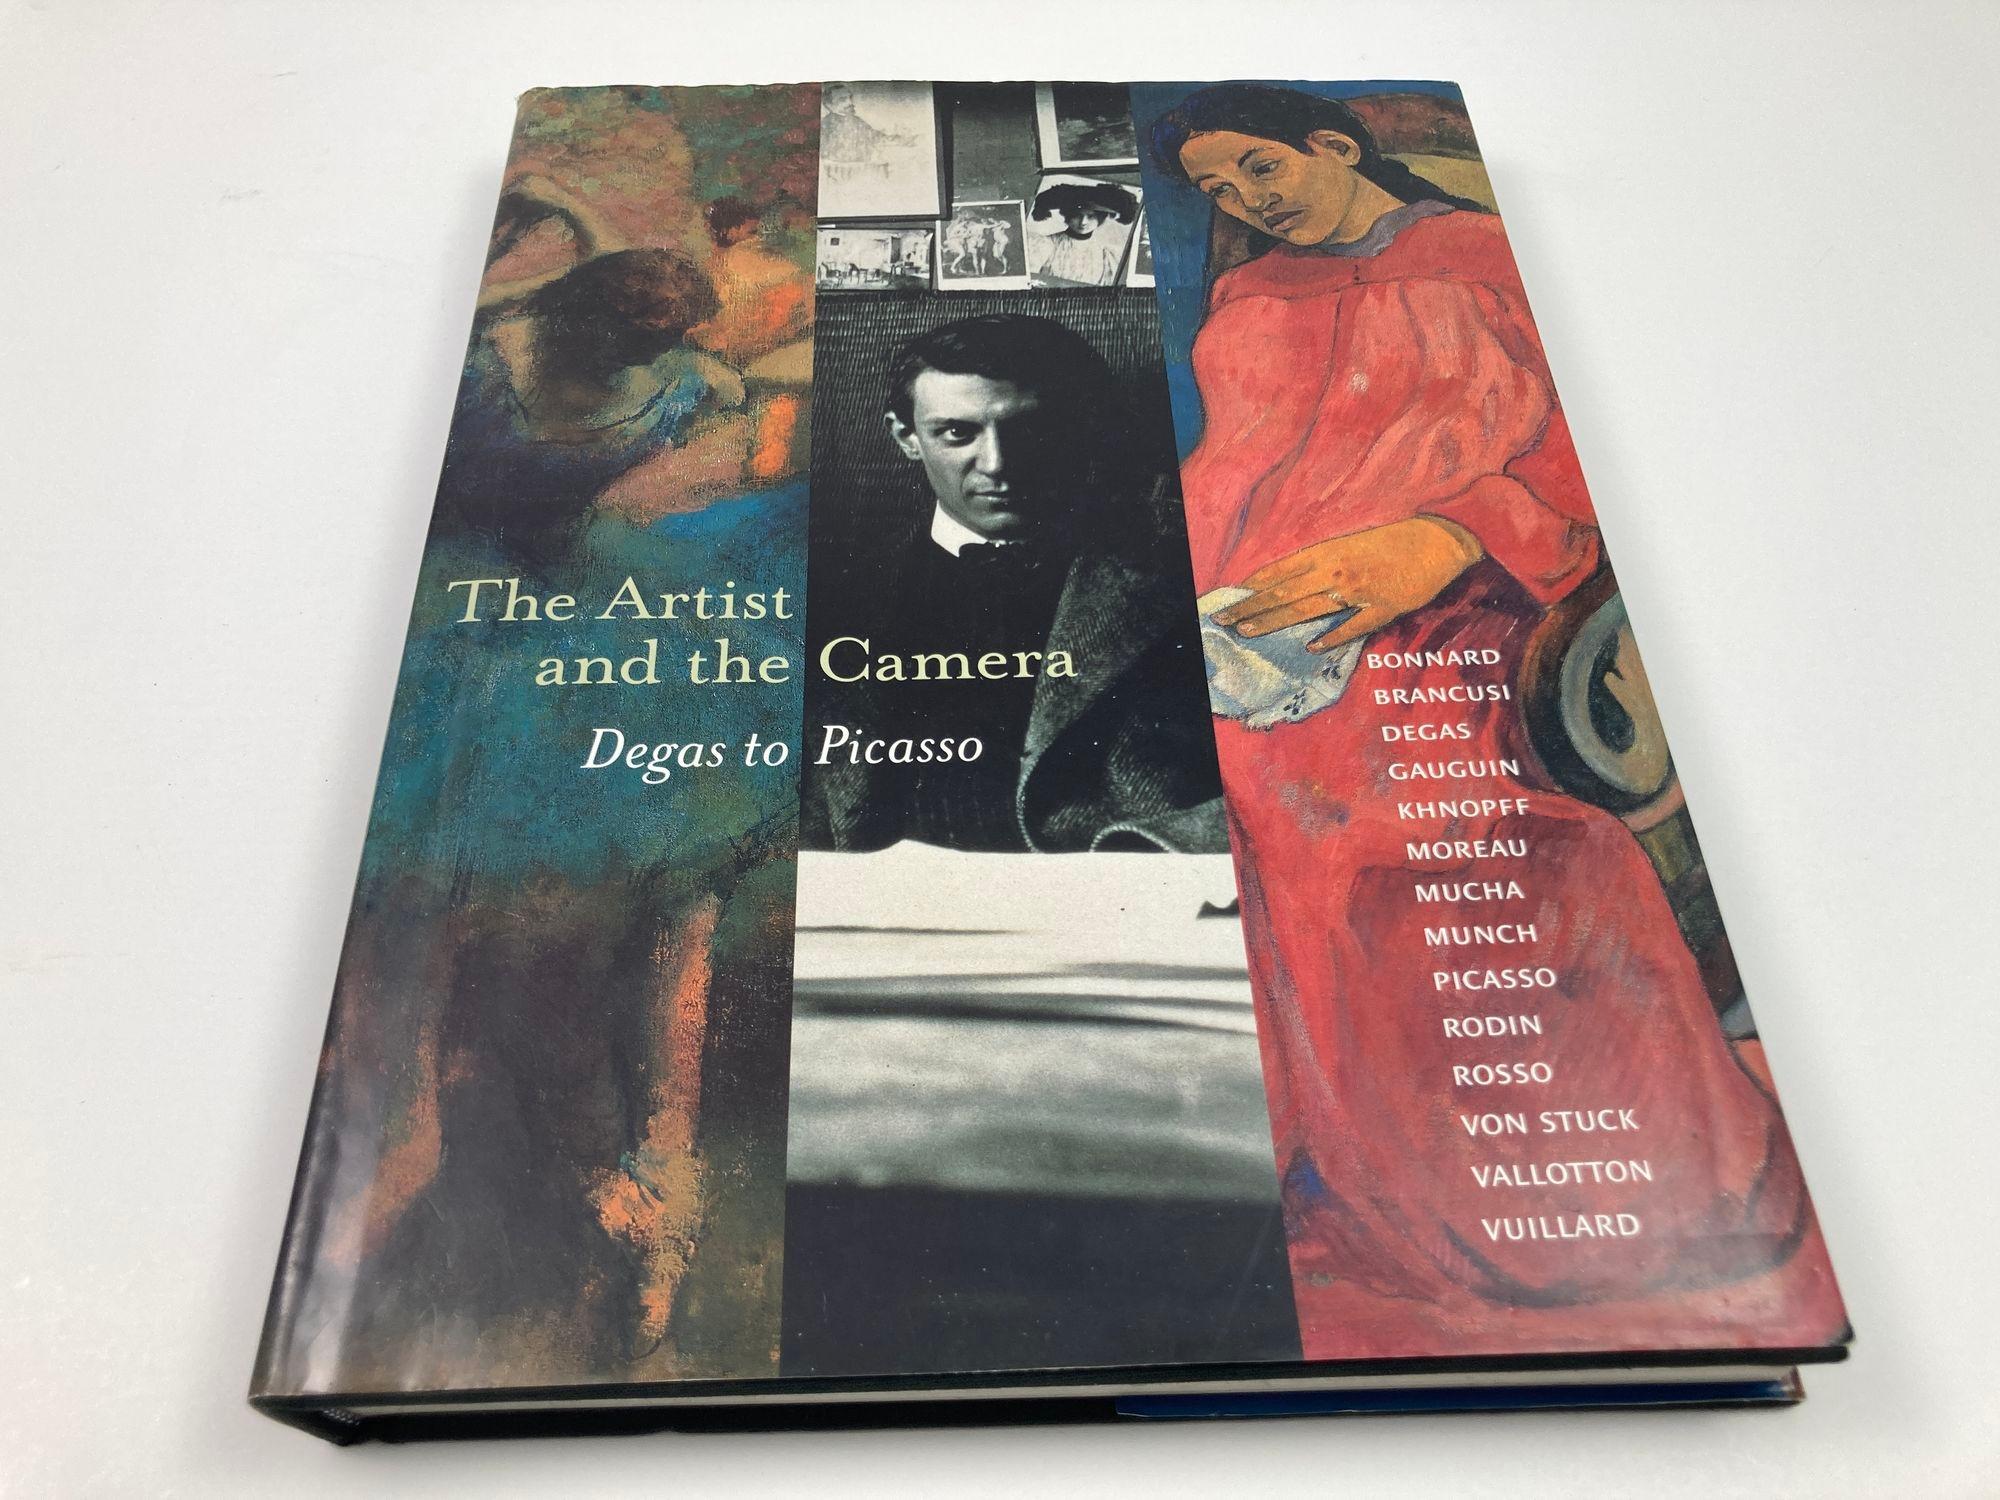 Gebundener Bildband im Überformat mit Schutzumschlag mit dem Titel THE ARTIST AND THE CAMERA: Degas to Picasso von Dorothy Kosinski.
Veröffentlicht 1999 vom Dallas Museum of Art.
Wunderschön illustriert mit alten Schwarz-Weiß-Fotos und farbigen